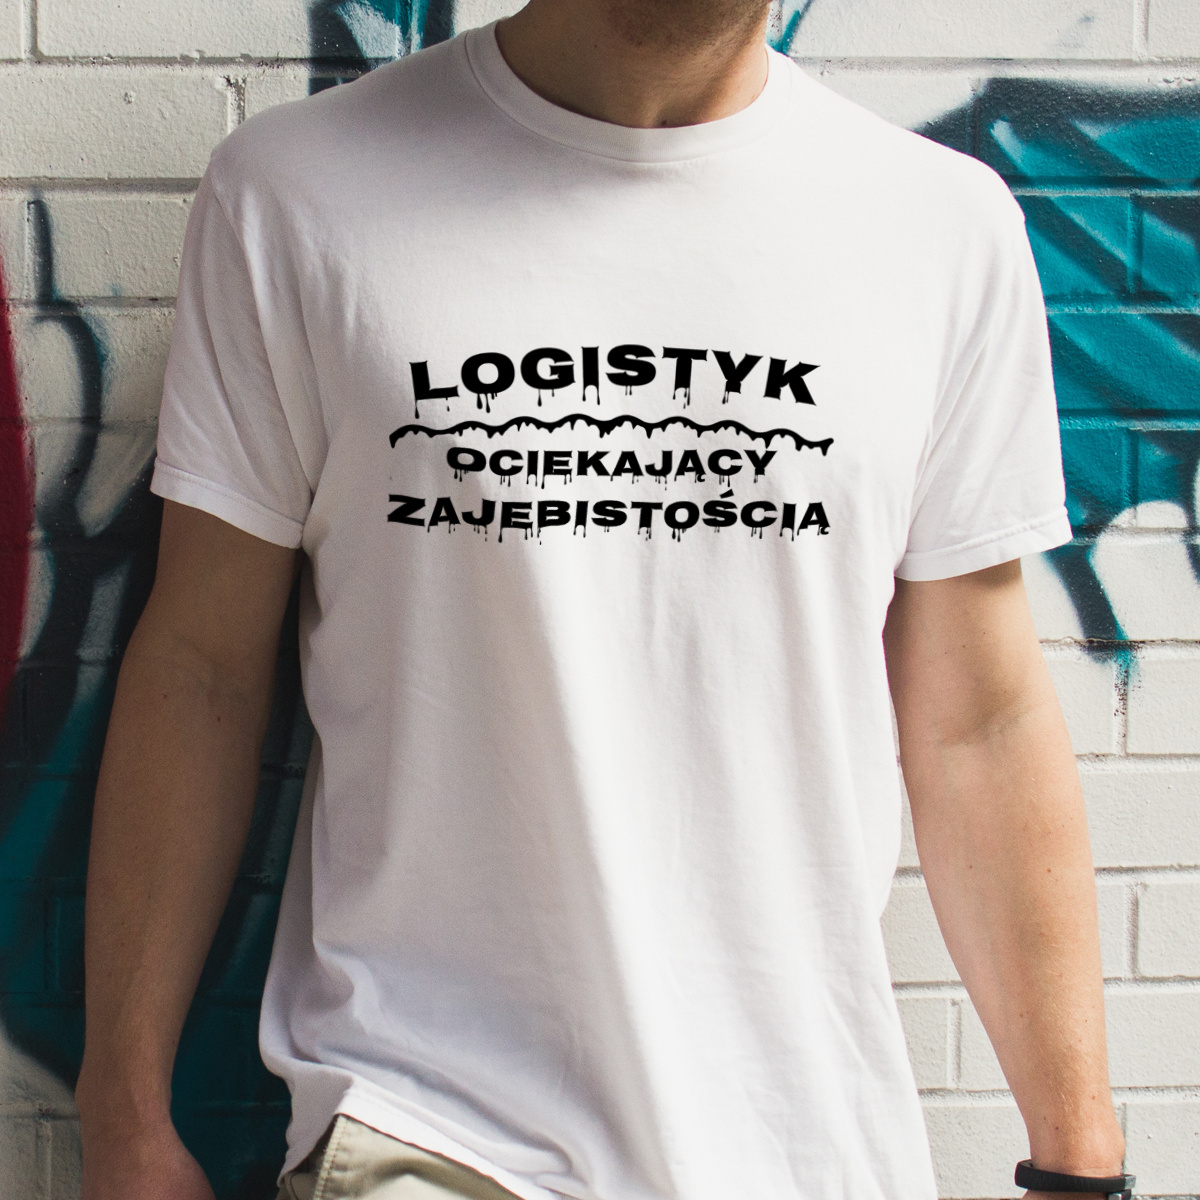 Logistyk Ociekający Zajebistością - Męska Koszulka Biała